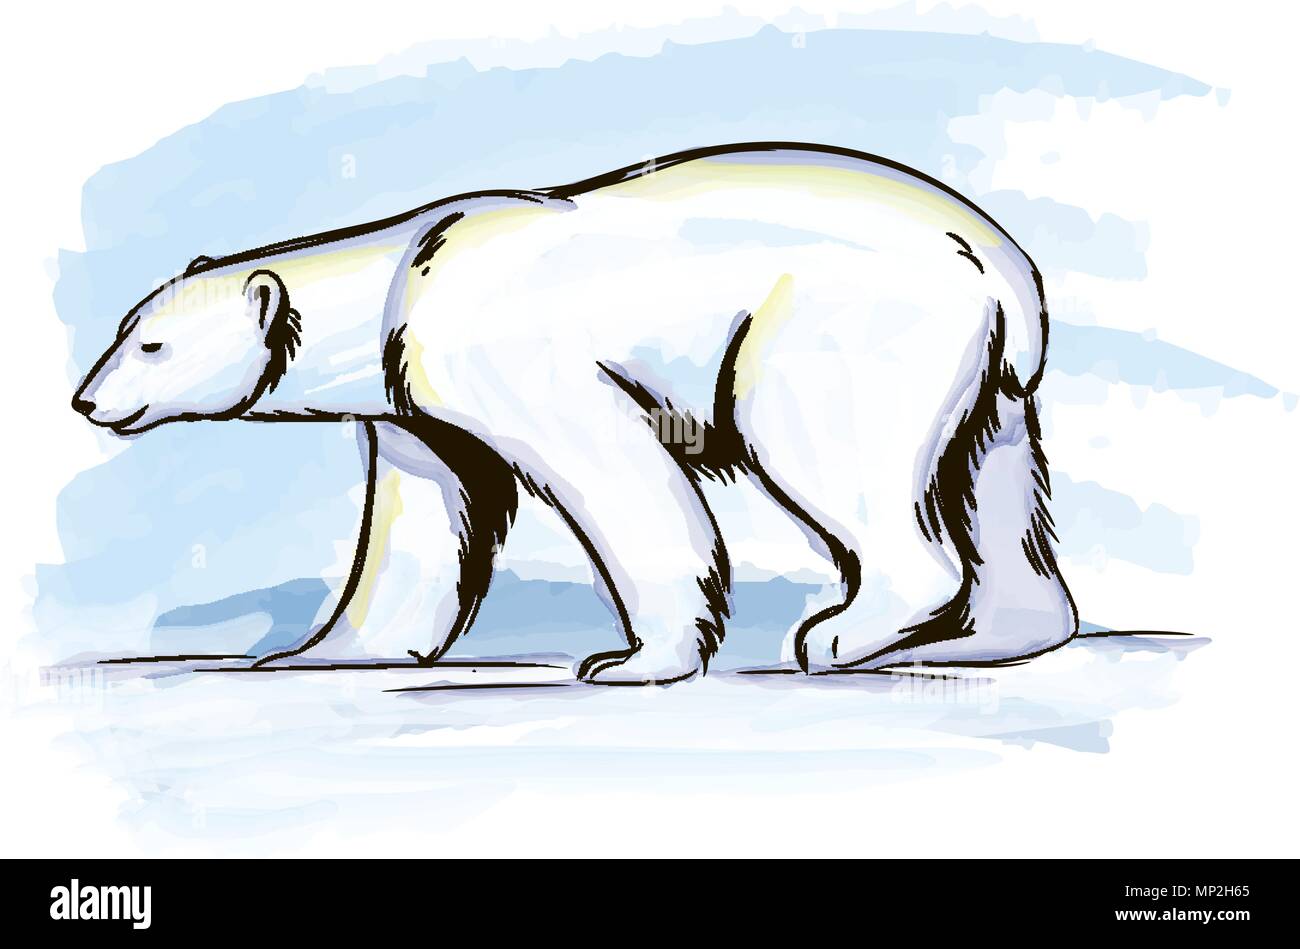 Vektor Wasser Farbe Abbildung: Eisbären in der Arktis Stock Vektor